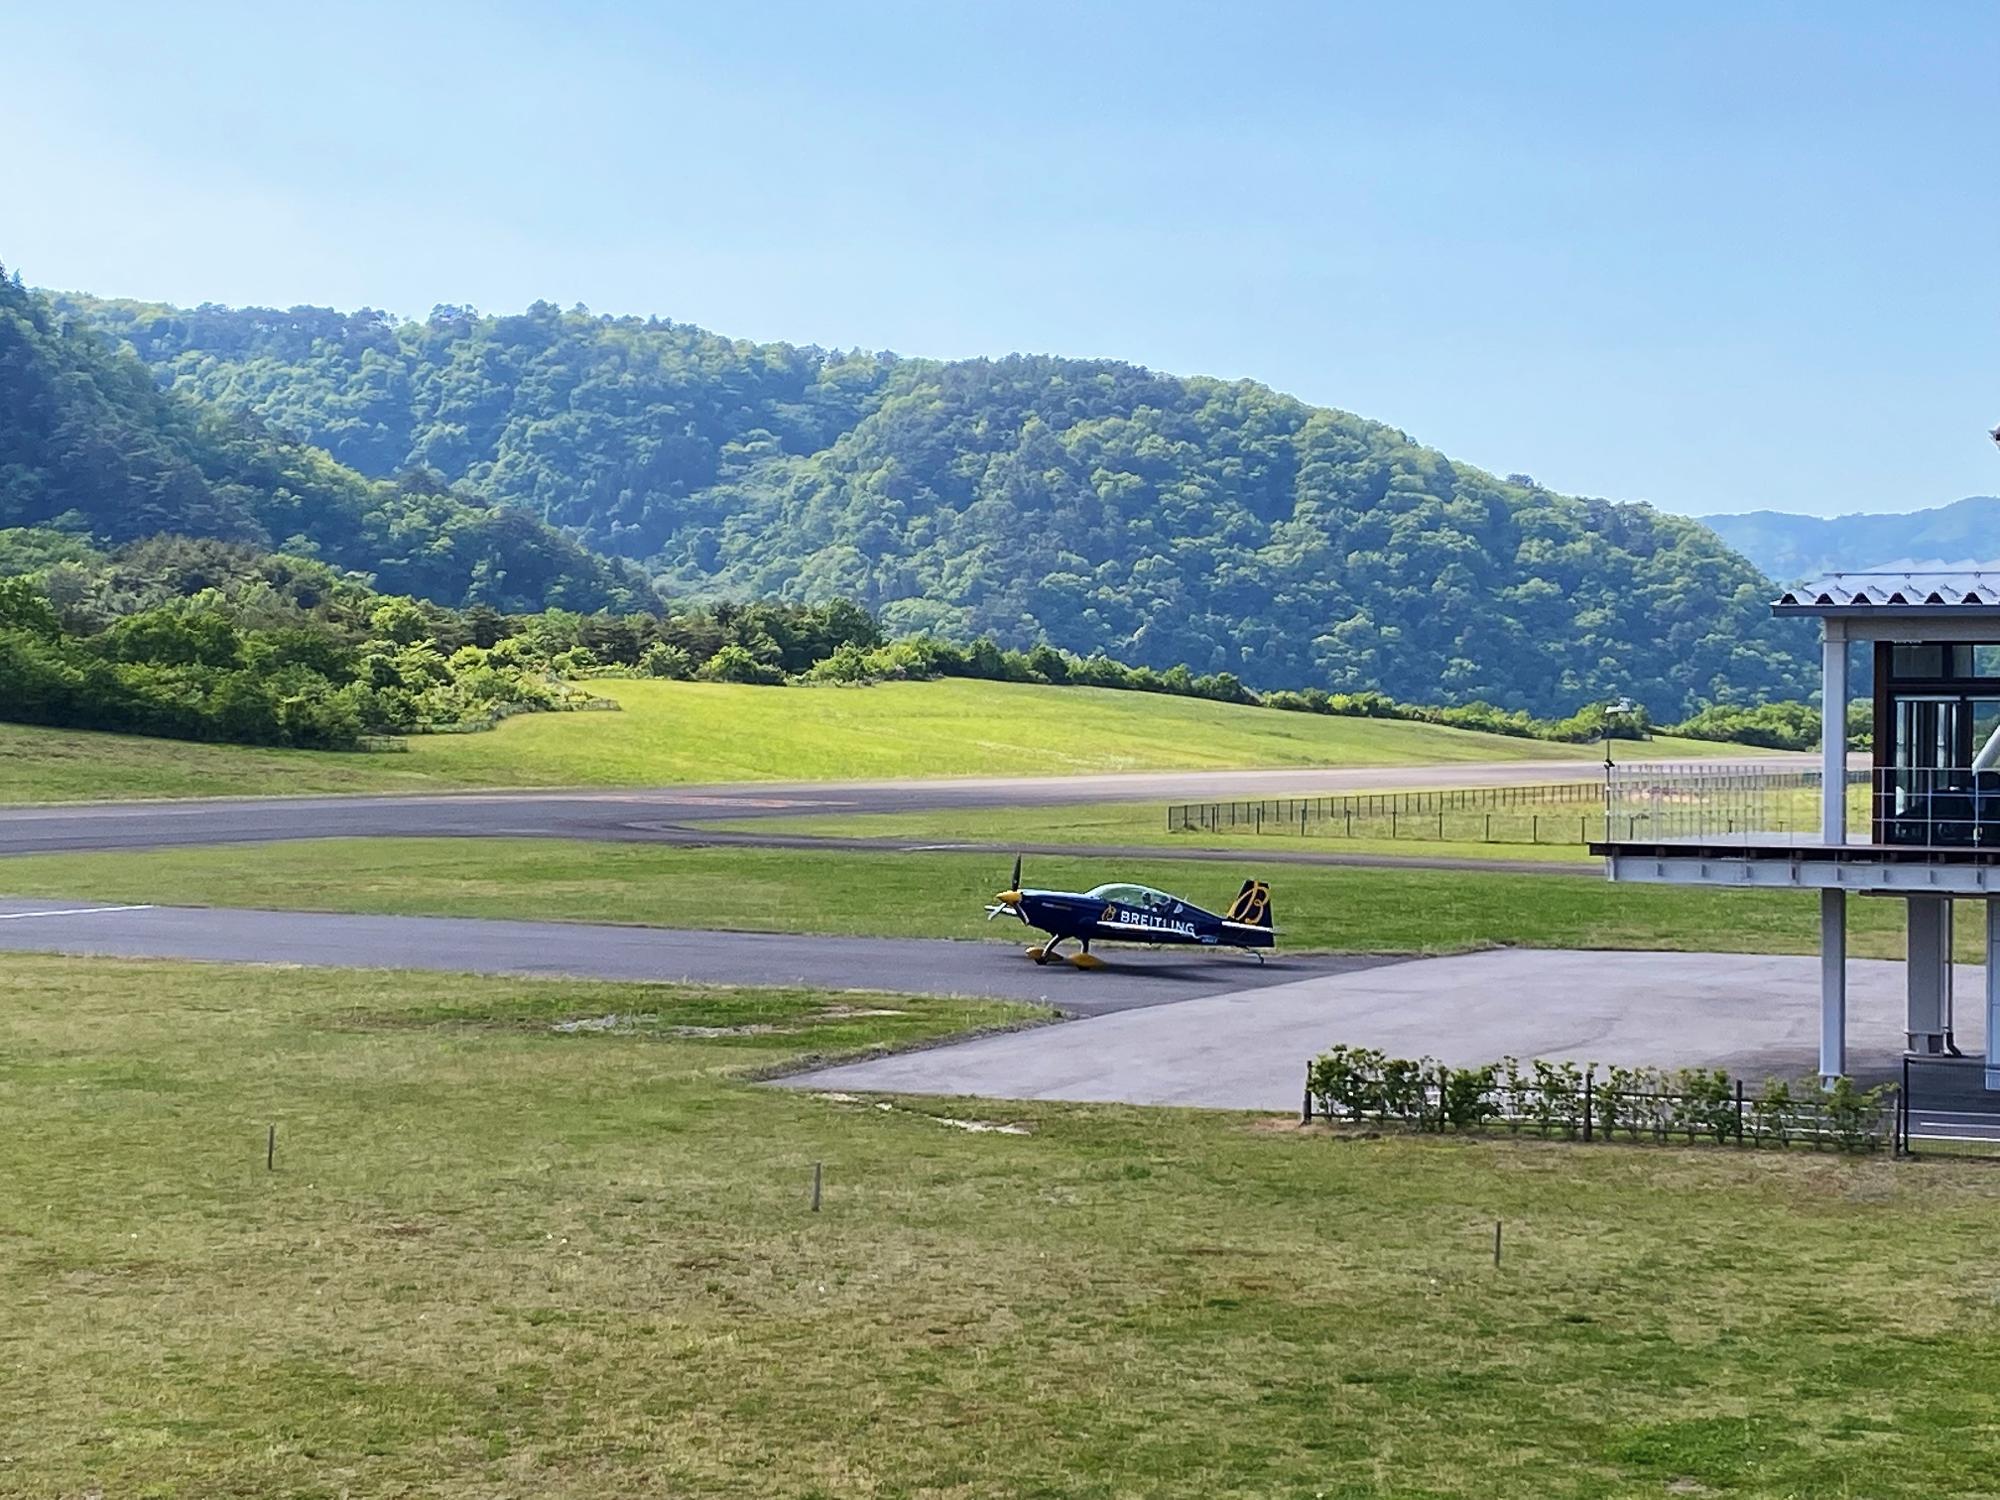 エアレースパイロット室屋義秀さんの飛行練習風景